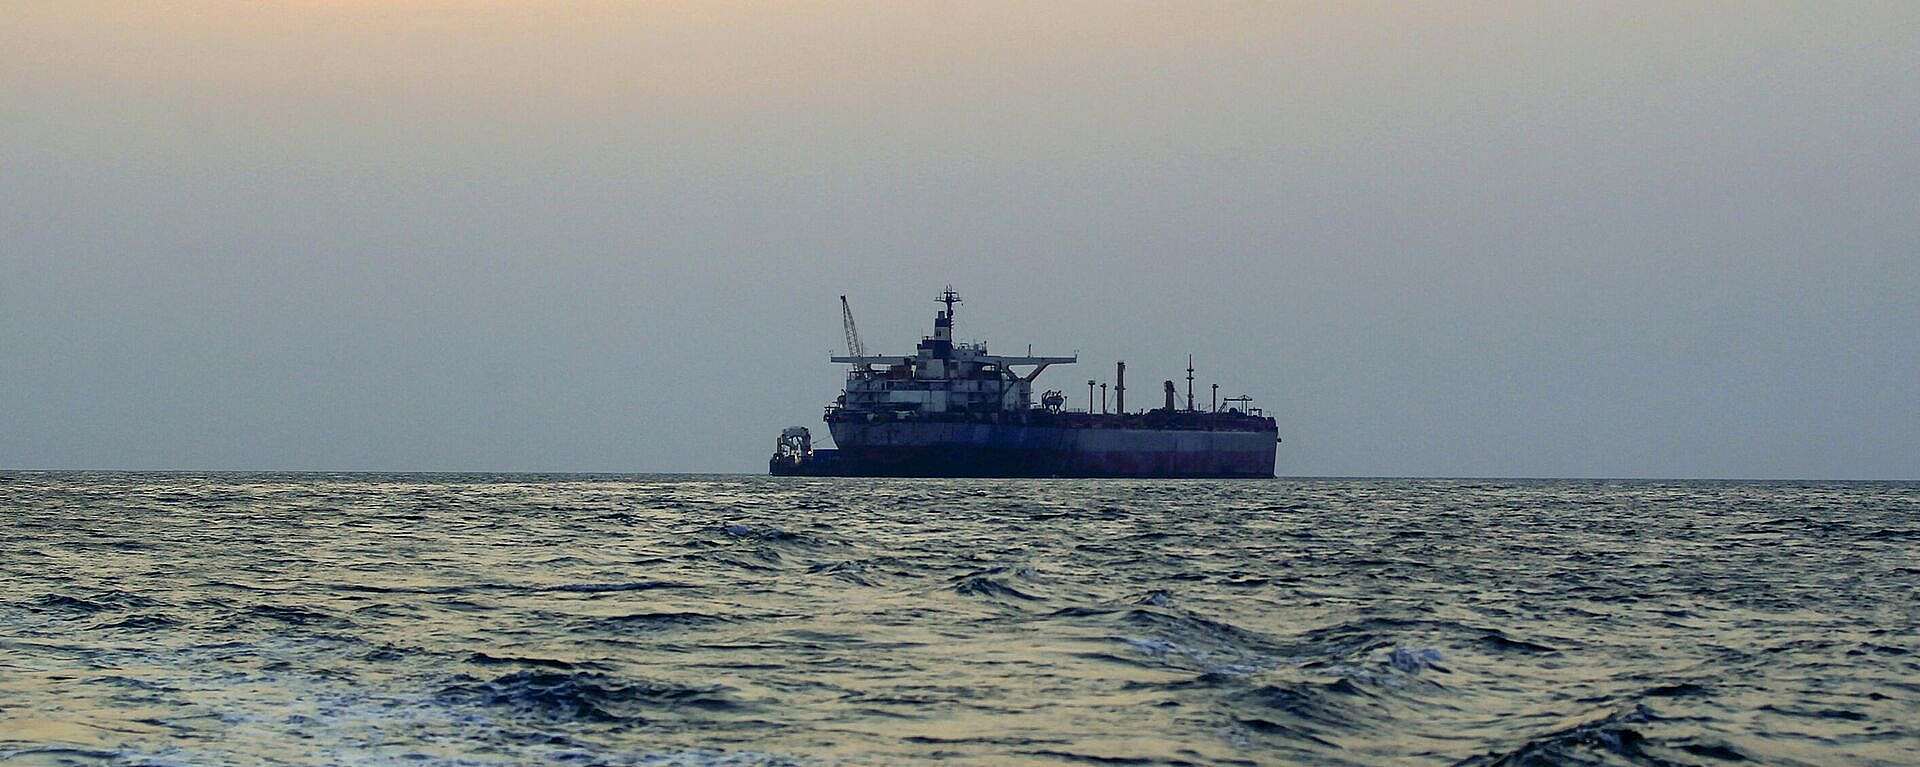 لأول مرة منذ بداية الهجمات.. هذا ما حدث لطاقم السفينة المستهدفة في خليج عدن اليوم